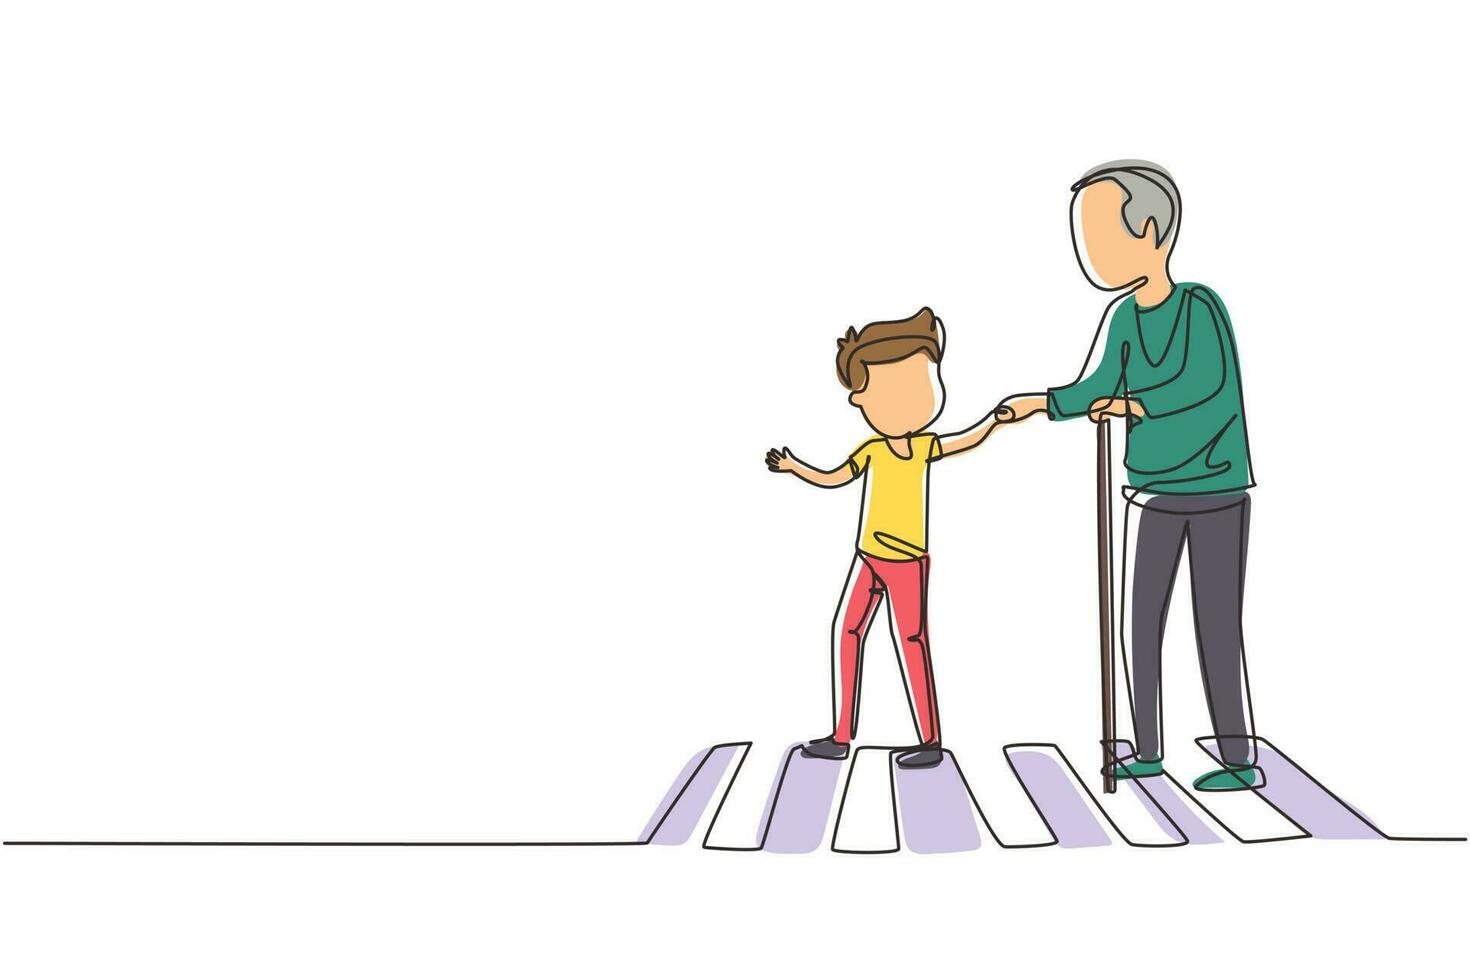 un solo dibujo de línea continua niño feliz ayuda al abuelo a cruzar la calle. niño amable y cortés que lleva al anciano al otro lado de la carretera, tomándolo de la mano. modales y respeto. ilustración de vector de diseño gráfico de una línea